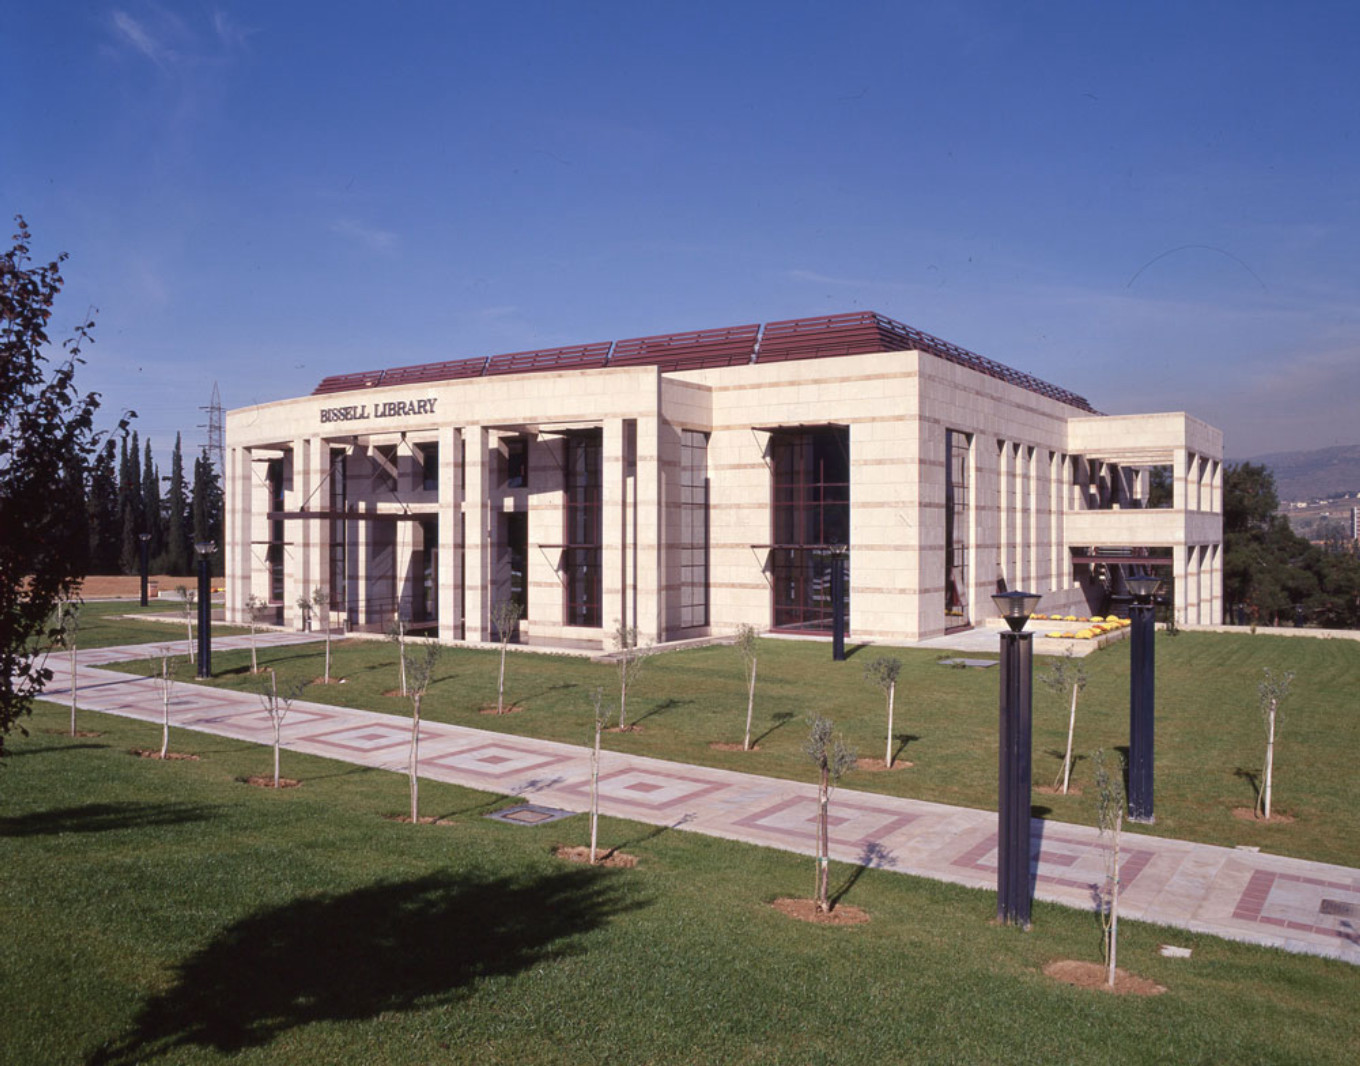 Bιβλιοθήκη “BISSELL” του Αμερικάνικου Κολλεγίου Θεσσαλονίκης